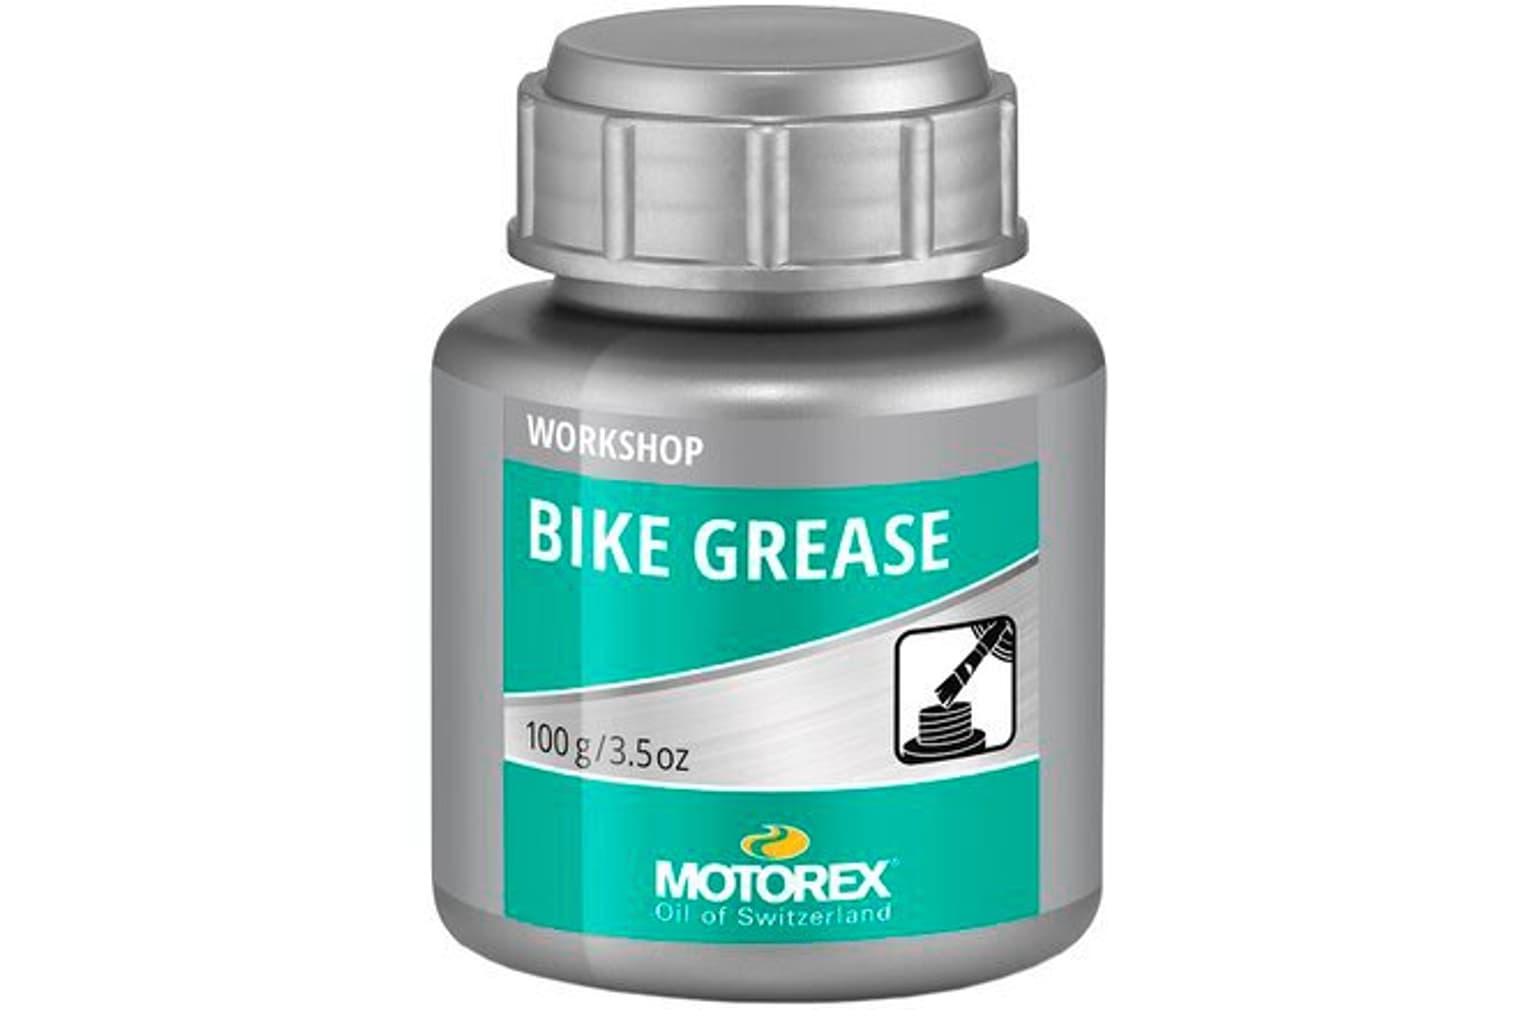 MOTOREX MOTOREX Bike Grease graisse pour vélo jaune bidon 100 g Prodotti trattanti 1